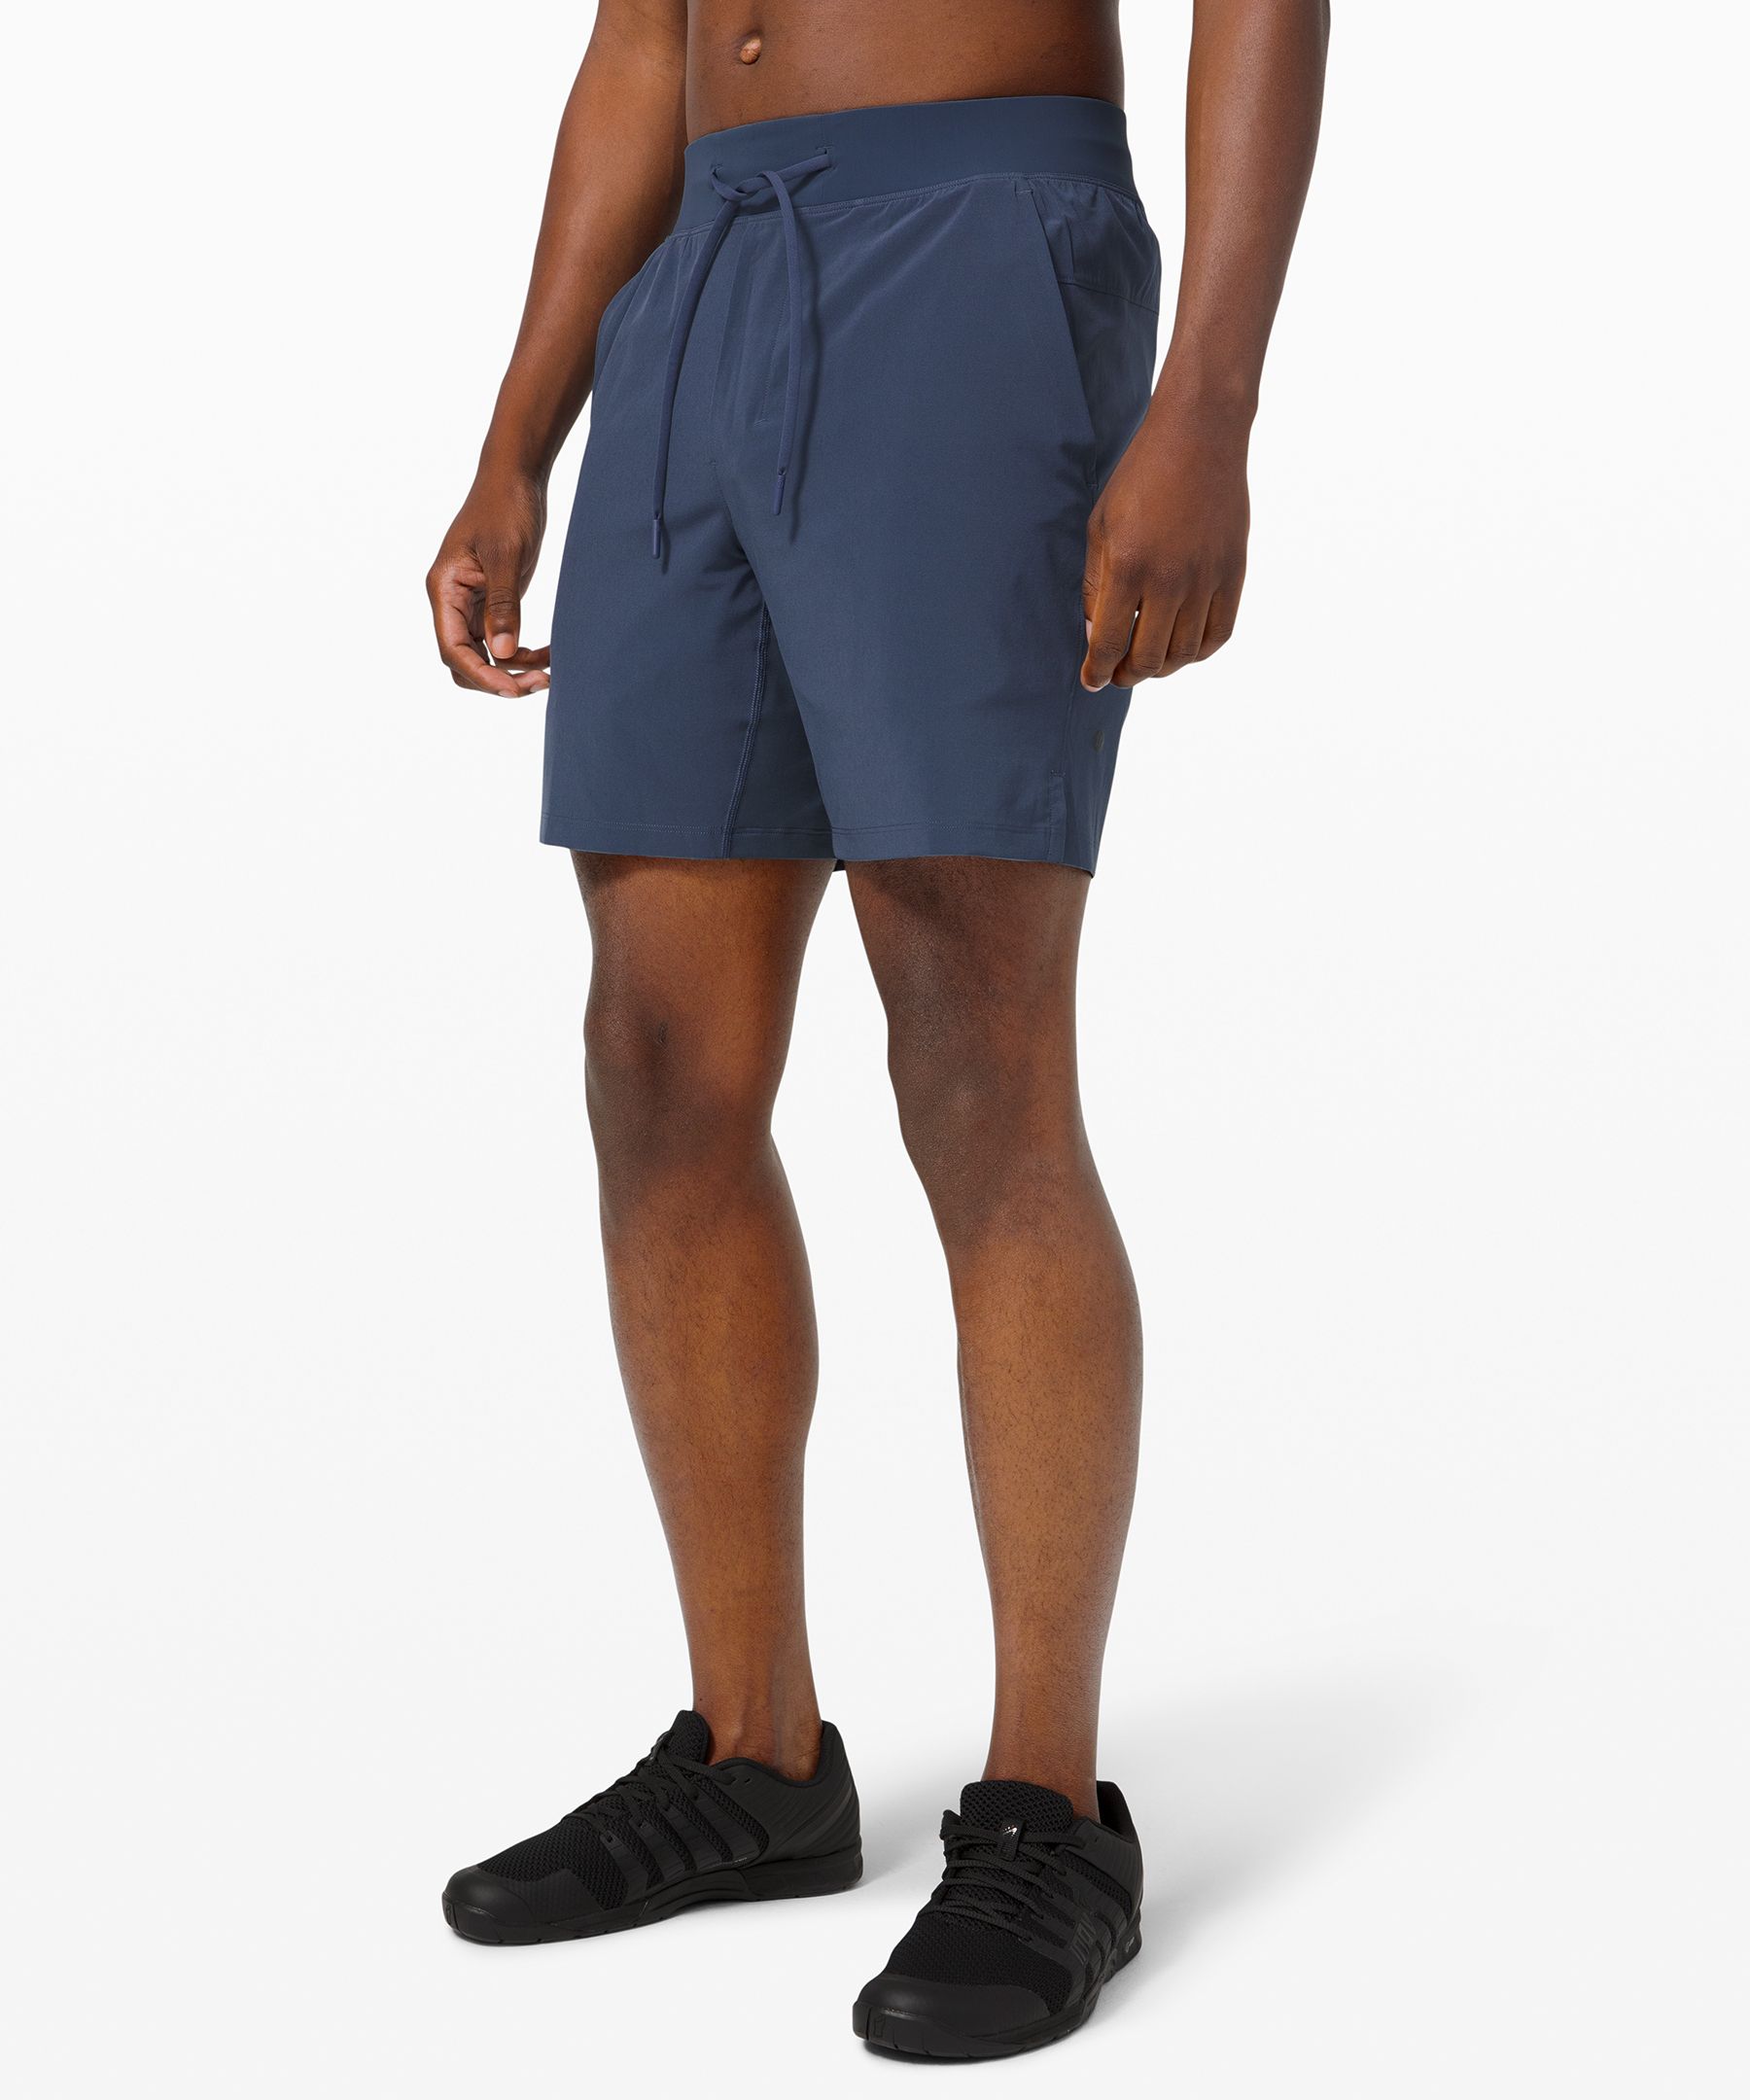 lululemon athletica shorts